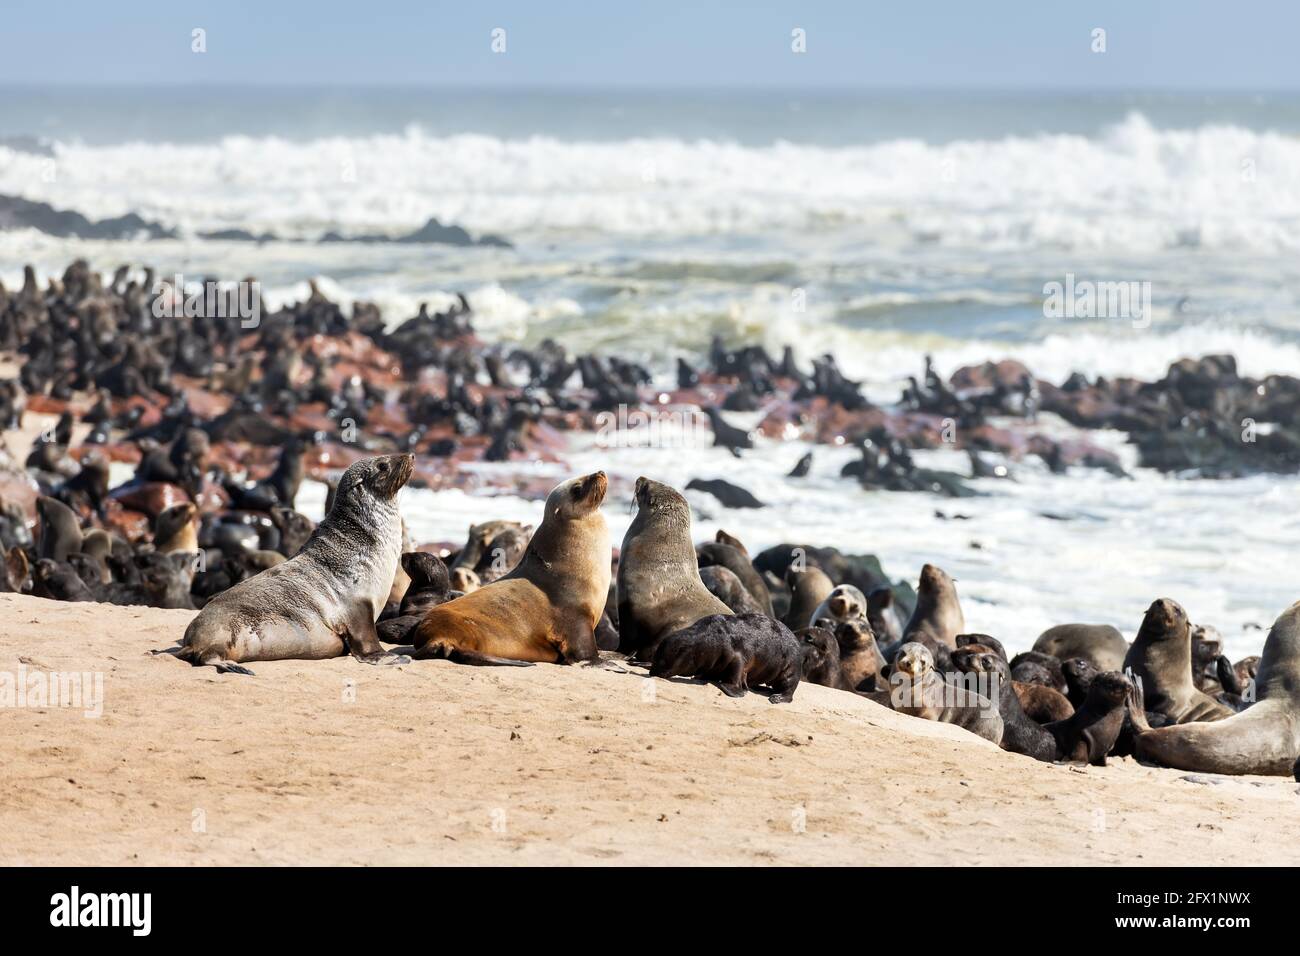 Les phoques à fourrure profitent de la chaleur du soleil à la colonie de phoques de Cape Cross en Namibie, en Afrique. Photographie de la faune Banque D'Images